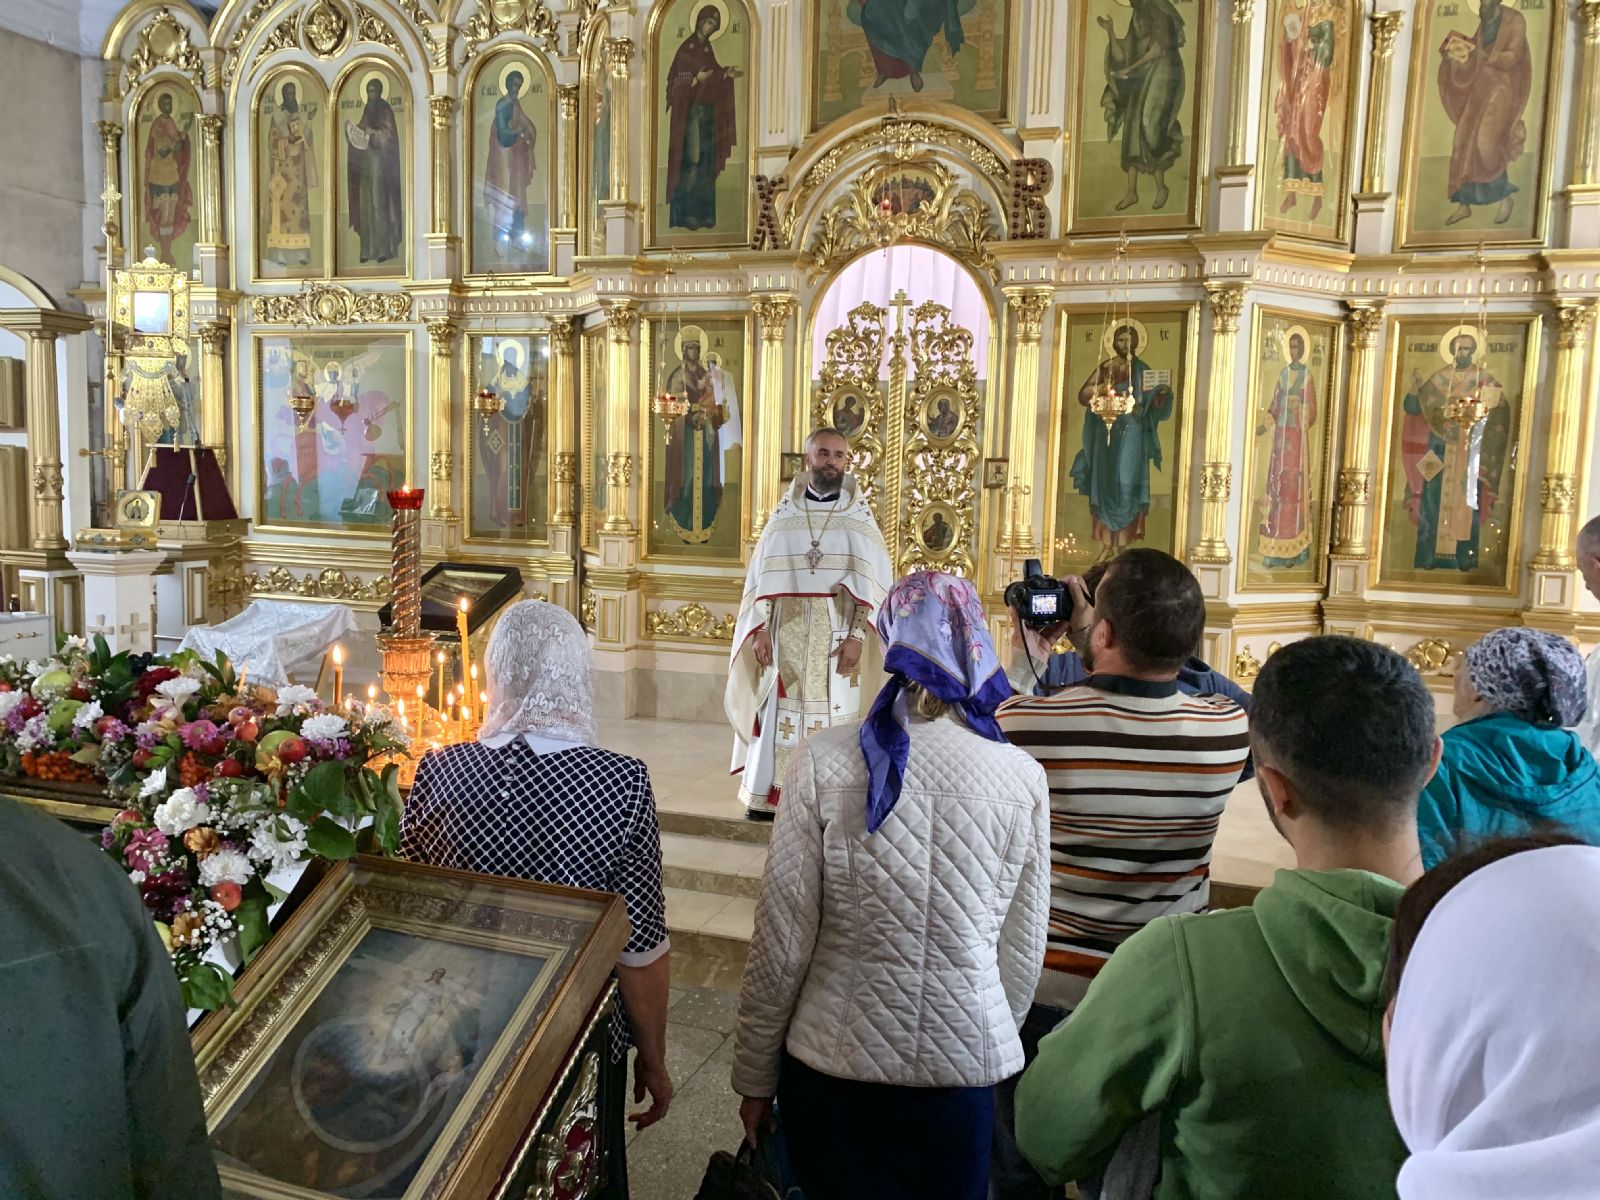 Благочинный Барнаульского городского округа протоиерей Андрей Басов доставил ковчег со святыней в Никольский храм г. Барнаула